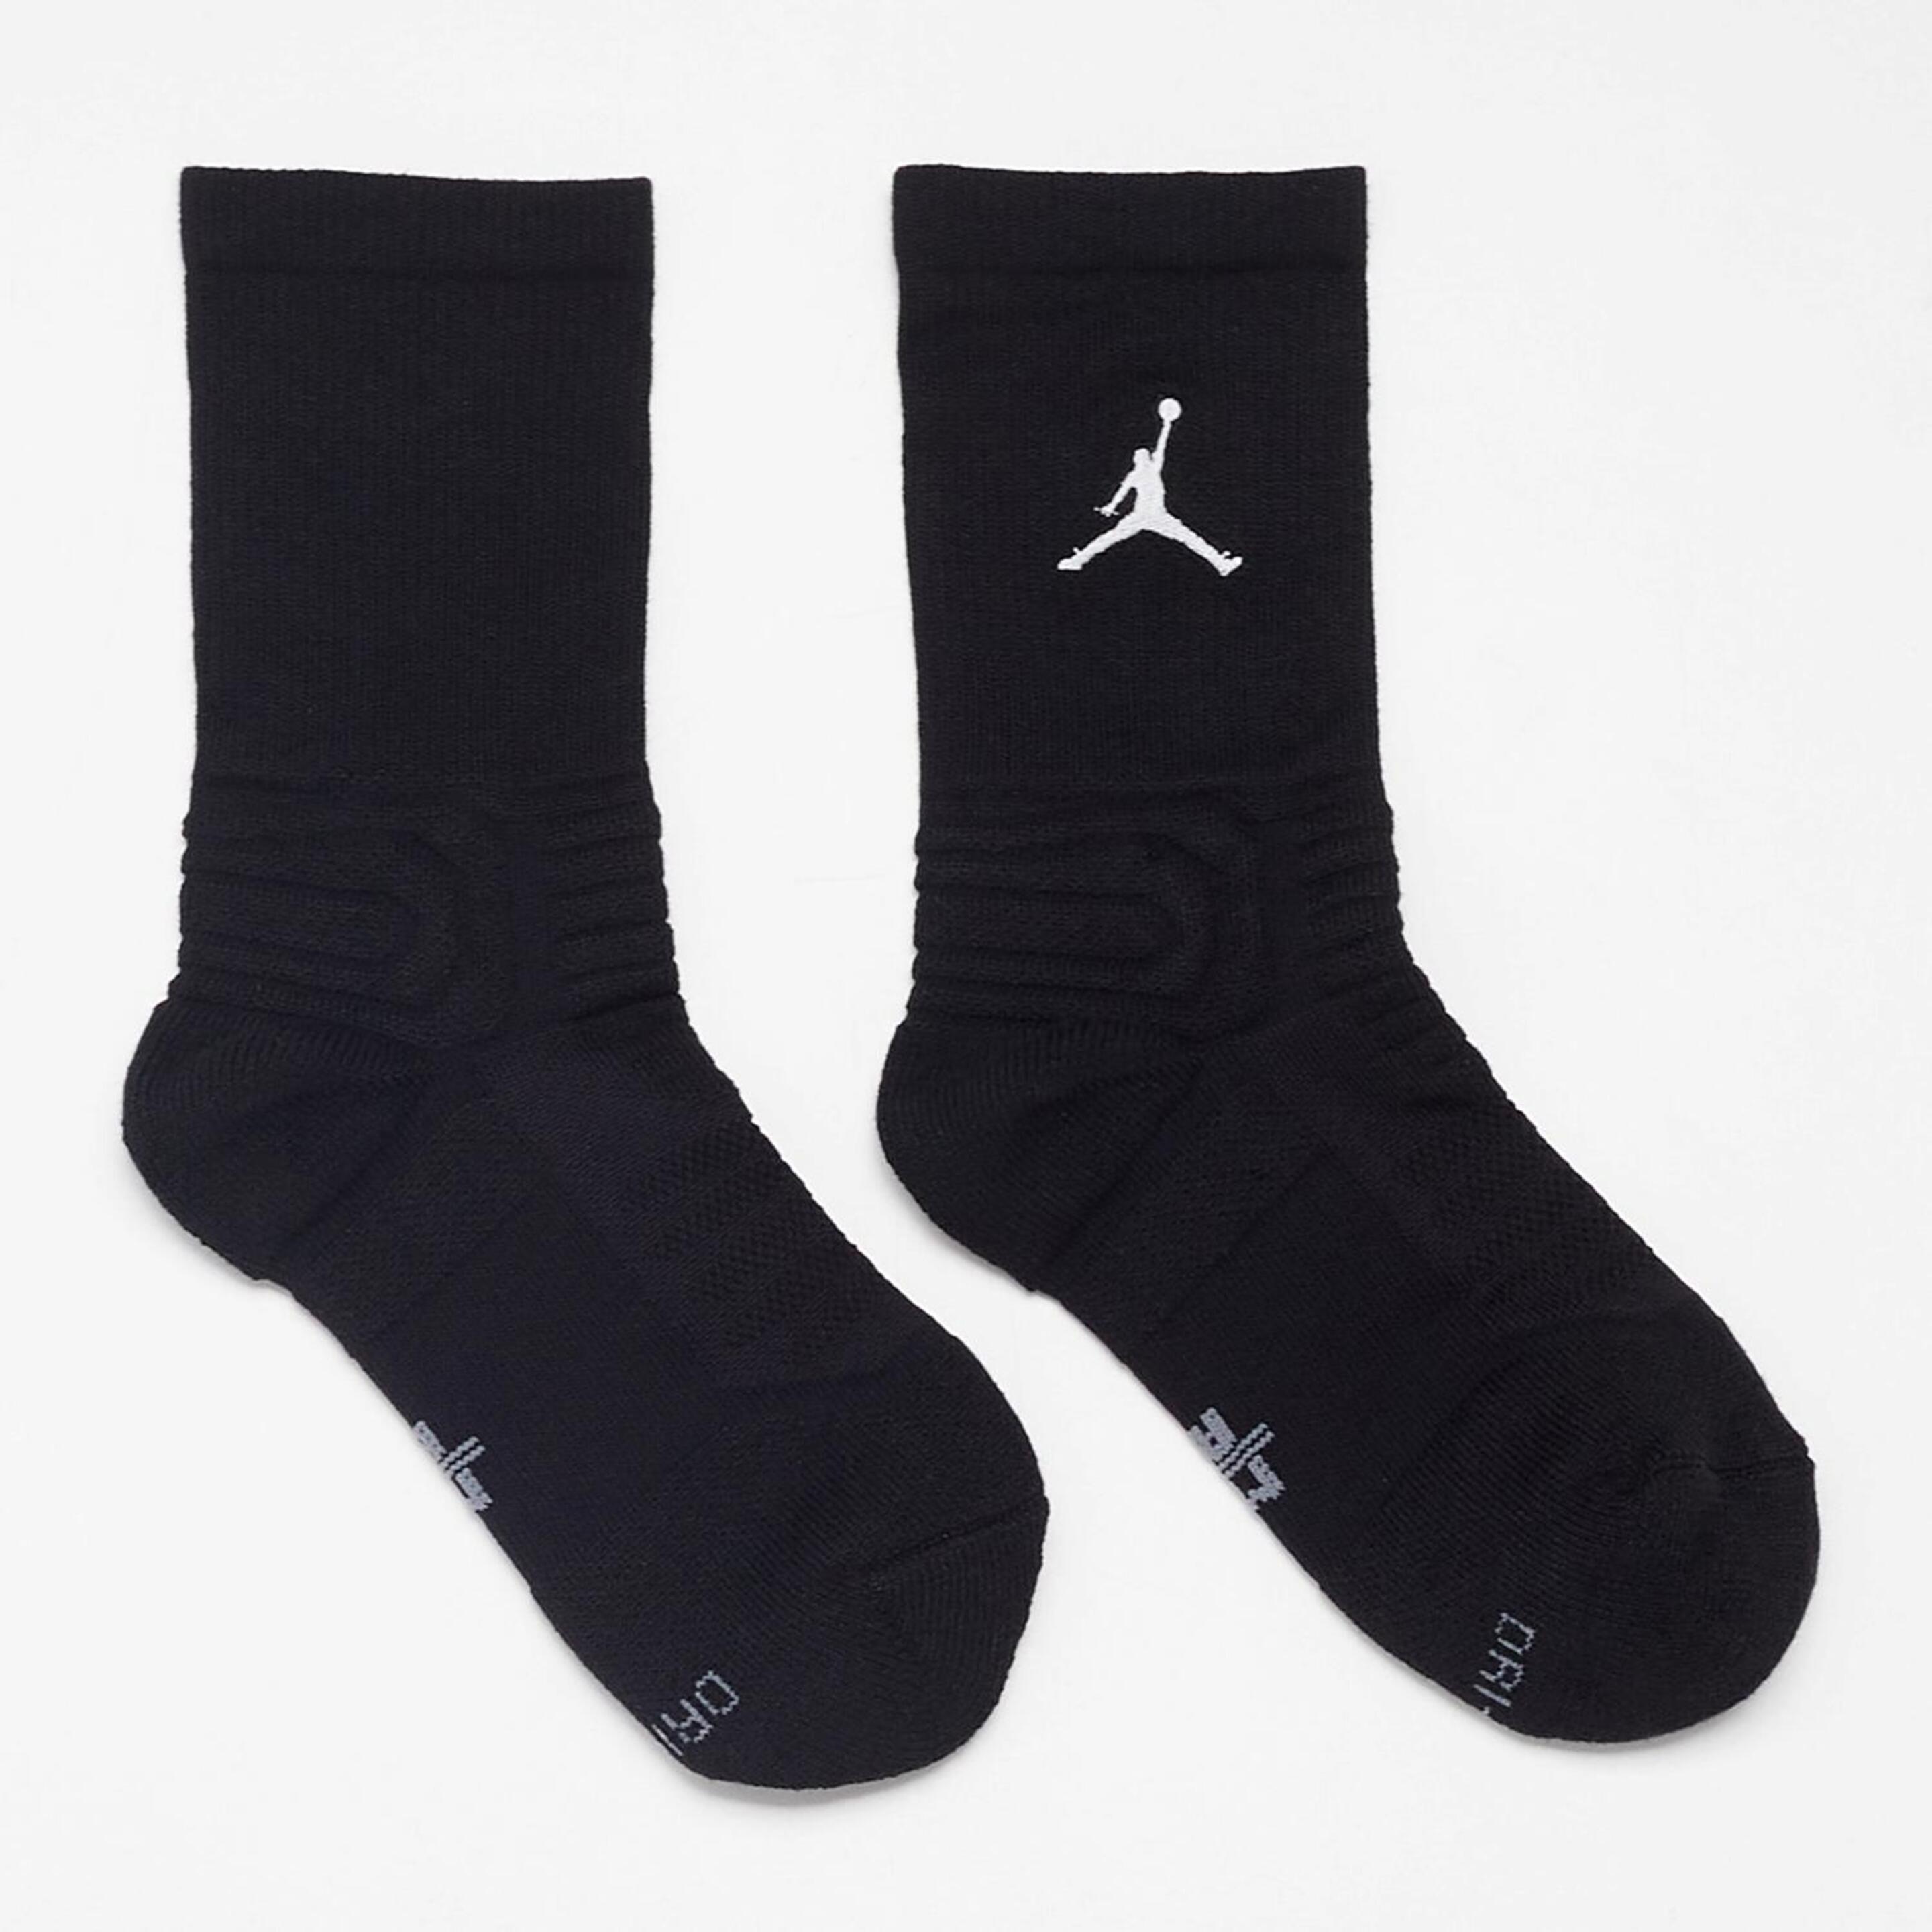 Nike Jordan Flight